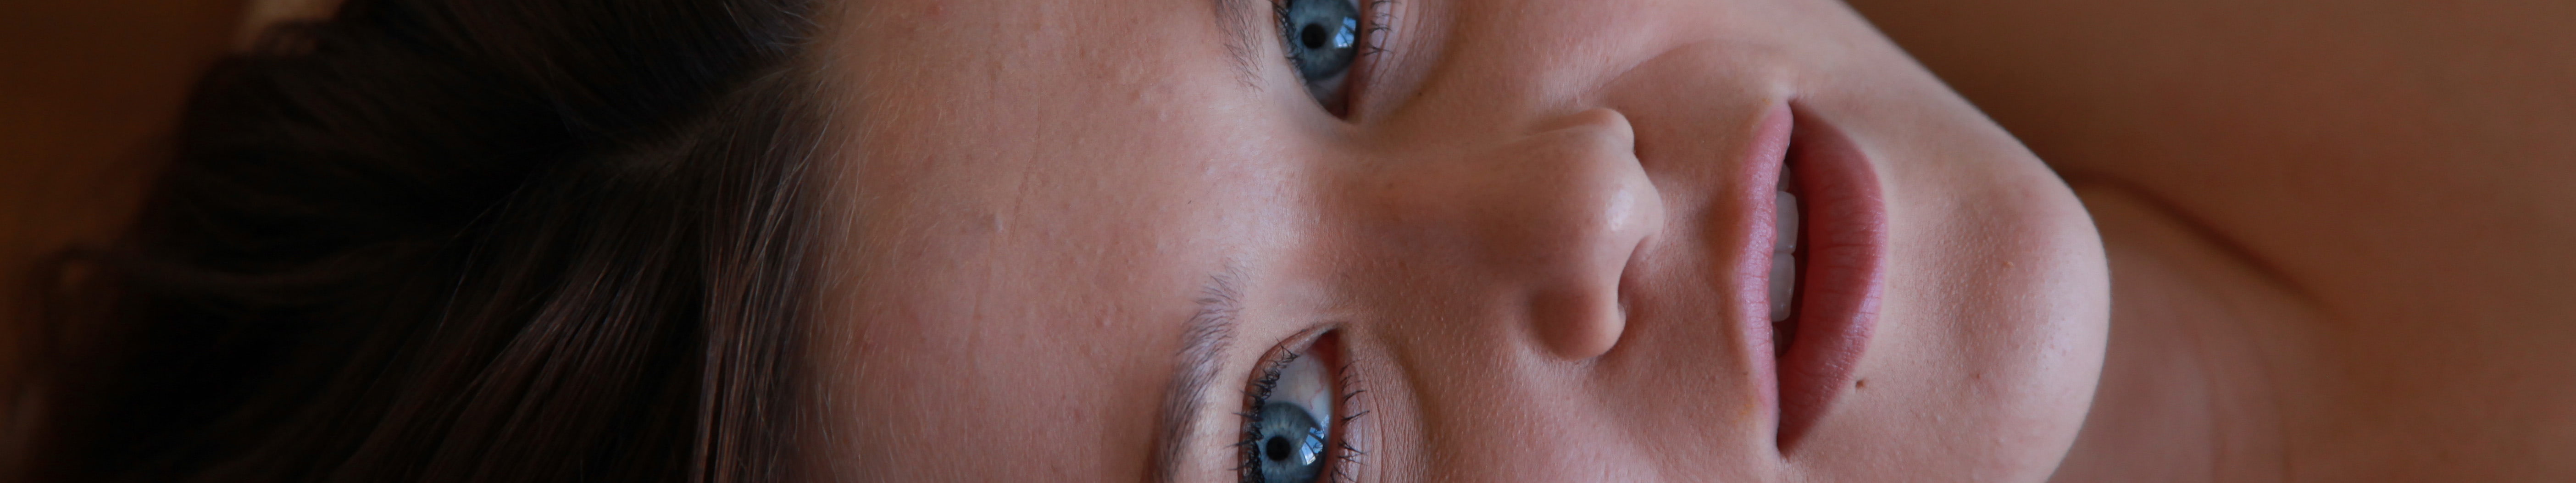 women, triple screen, face, blue eyes